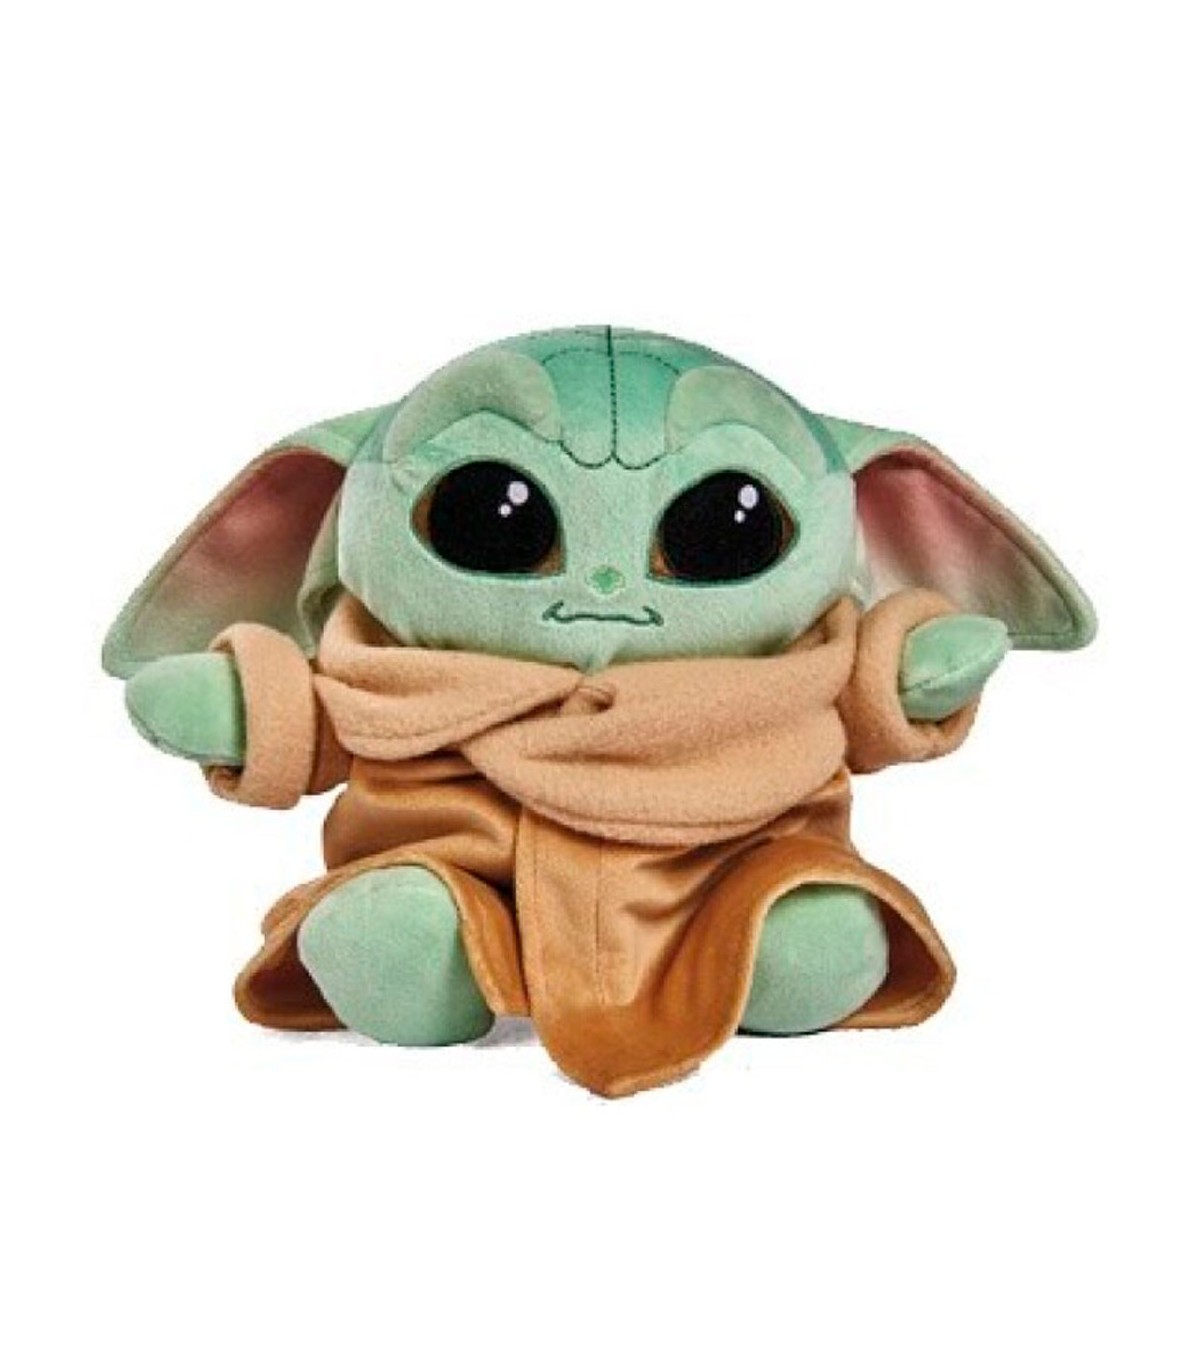 Peluche Bebe Yoda, el niño Baby Yoda de Star Wars. Oferta -30%